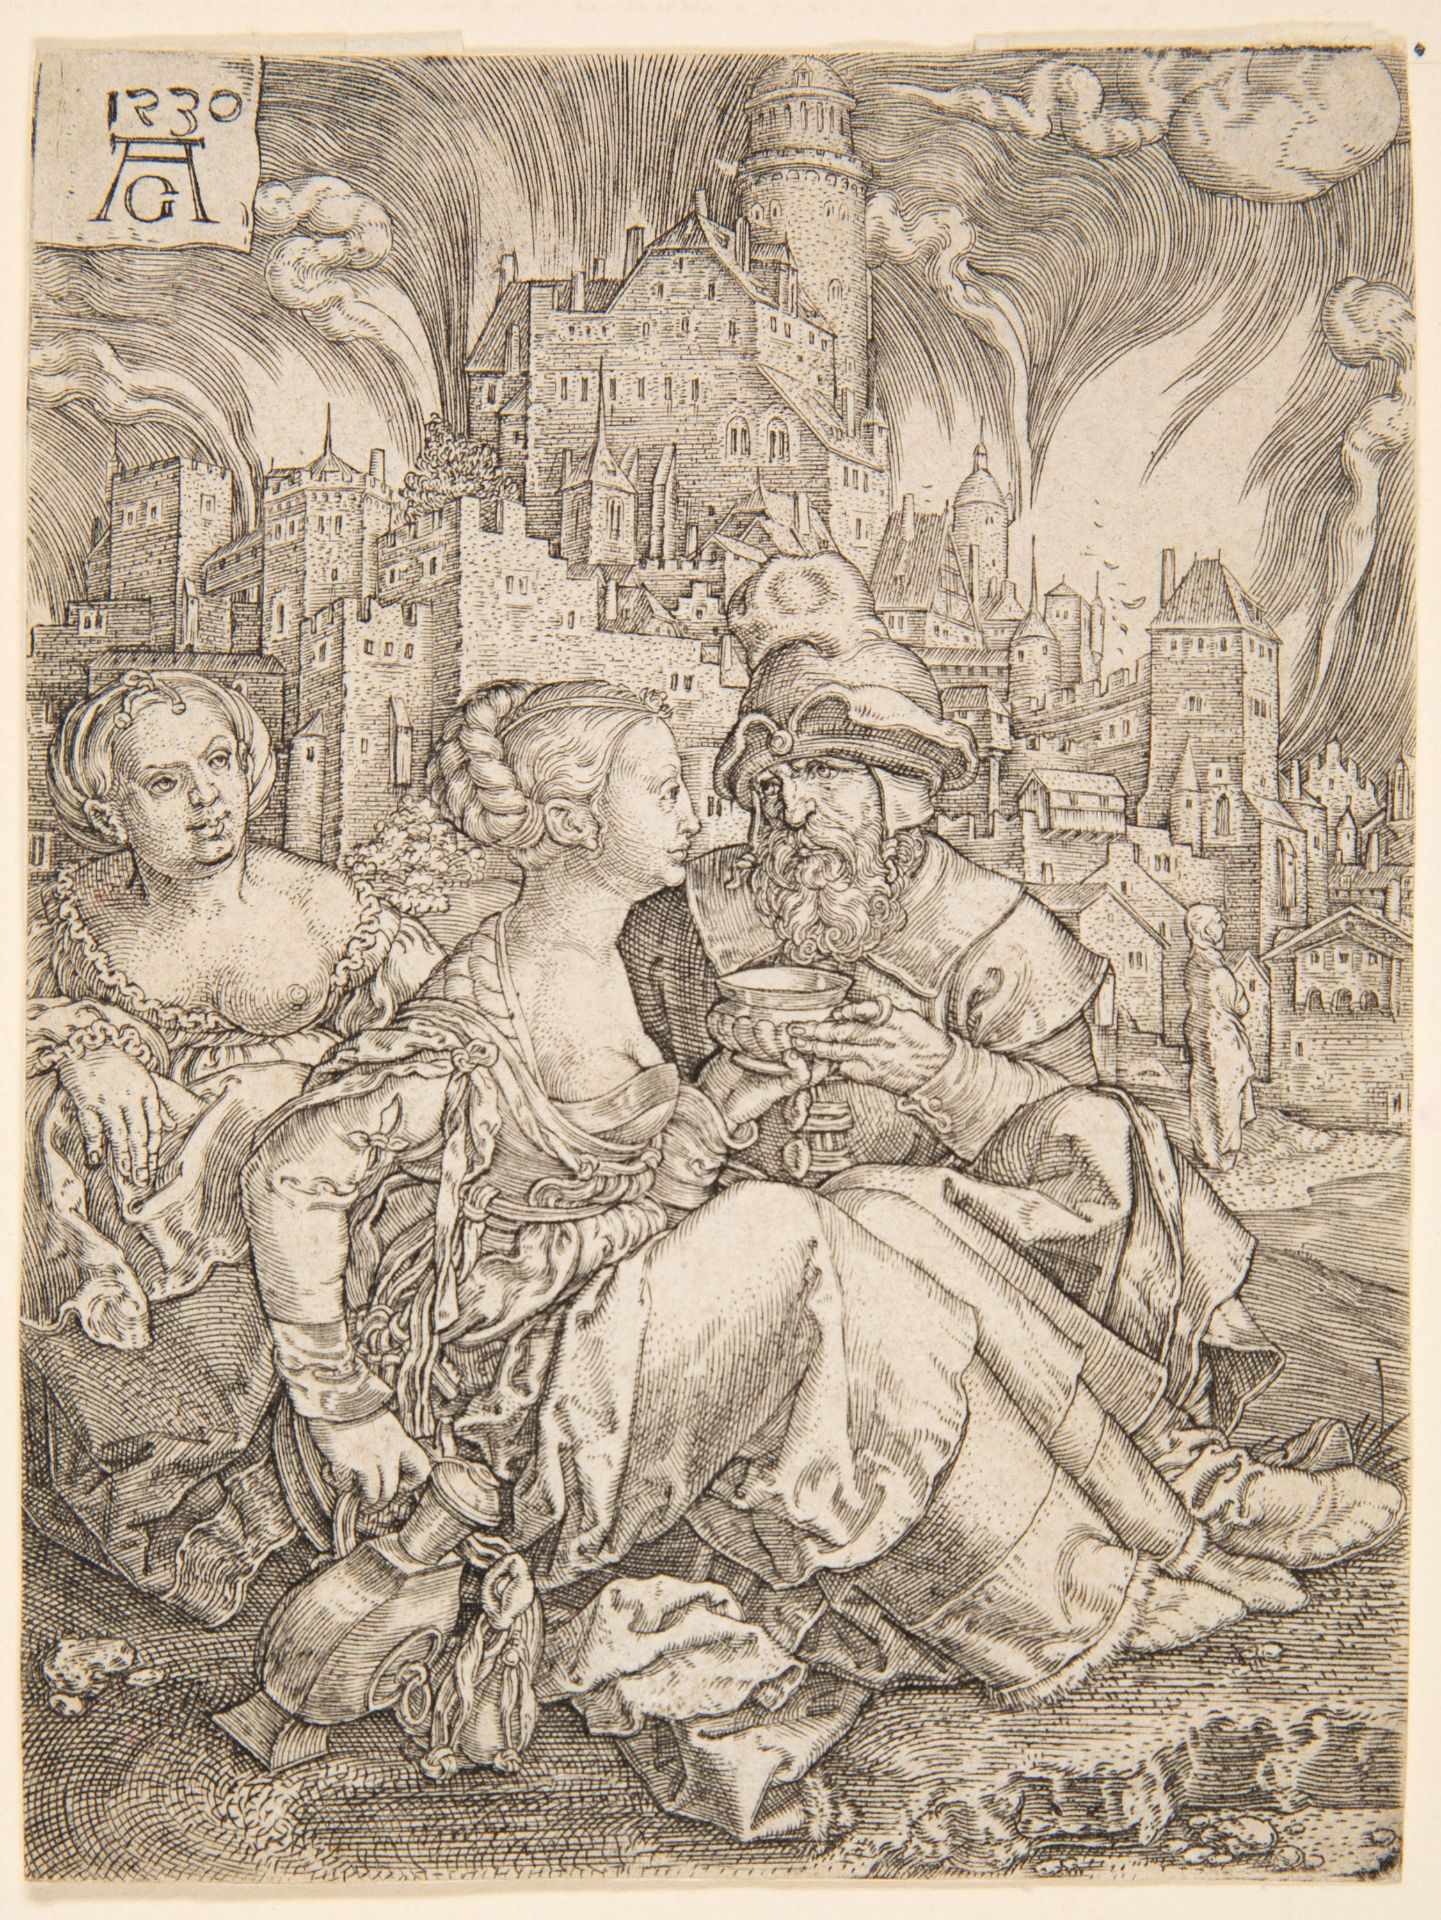 Heinrich Aldegrever. Lot und seine Töchter. 1530. Kupferstich. New Hollstein 13.